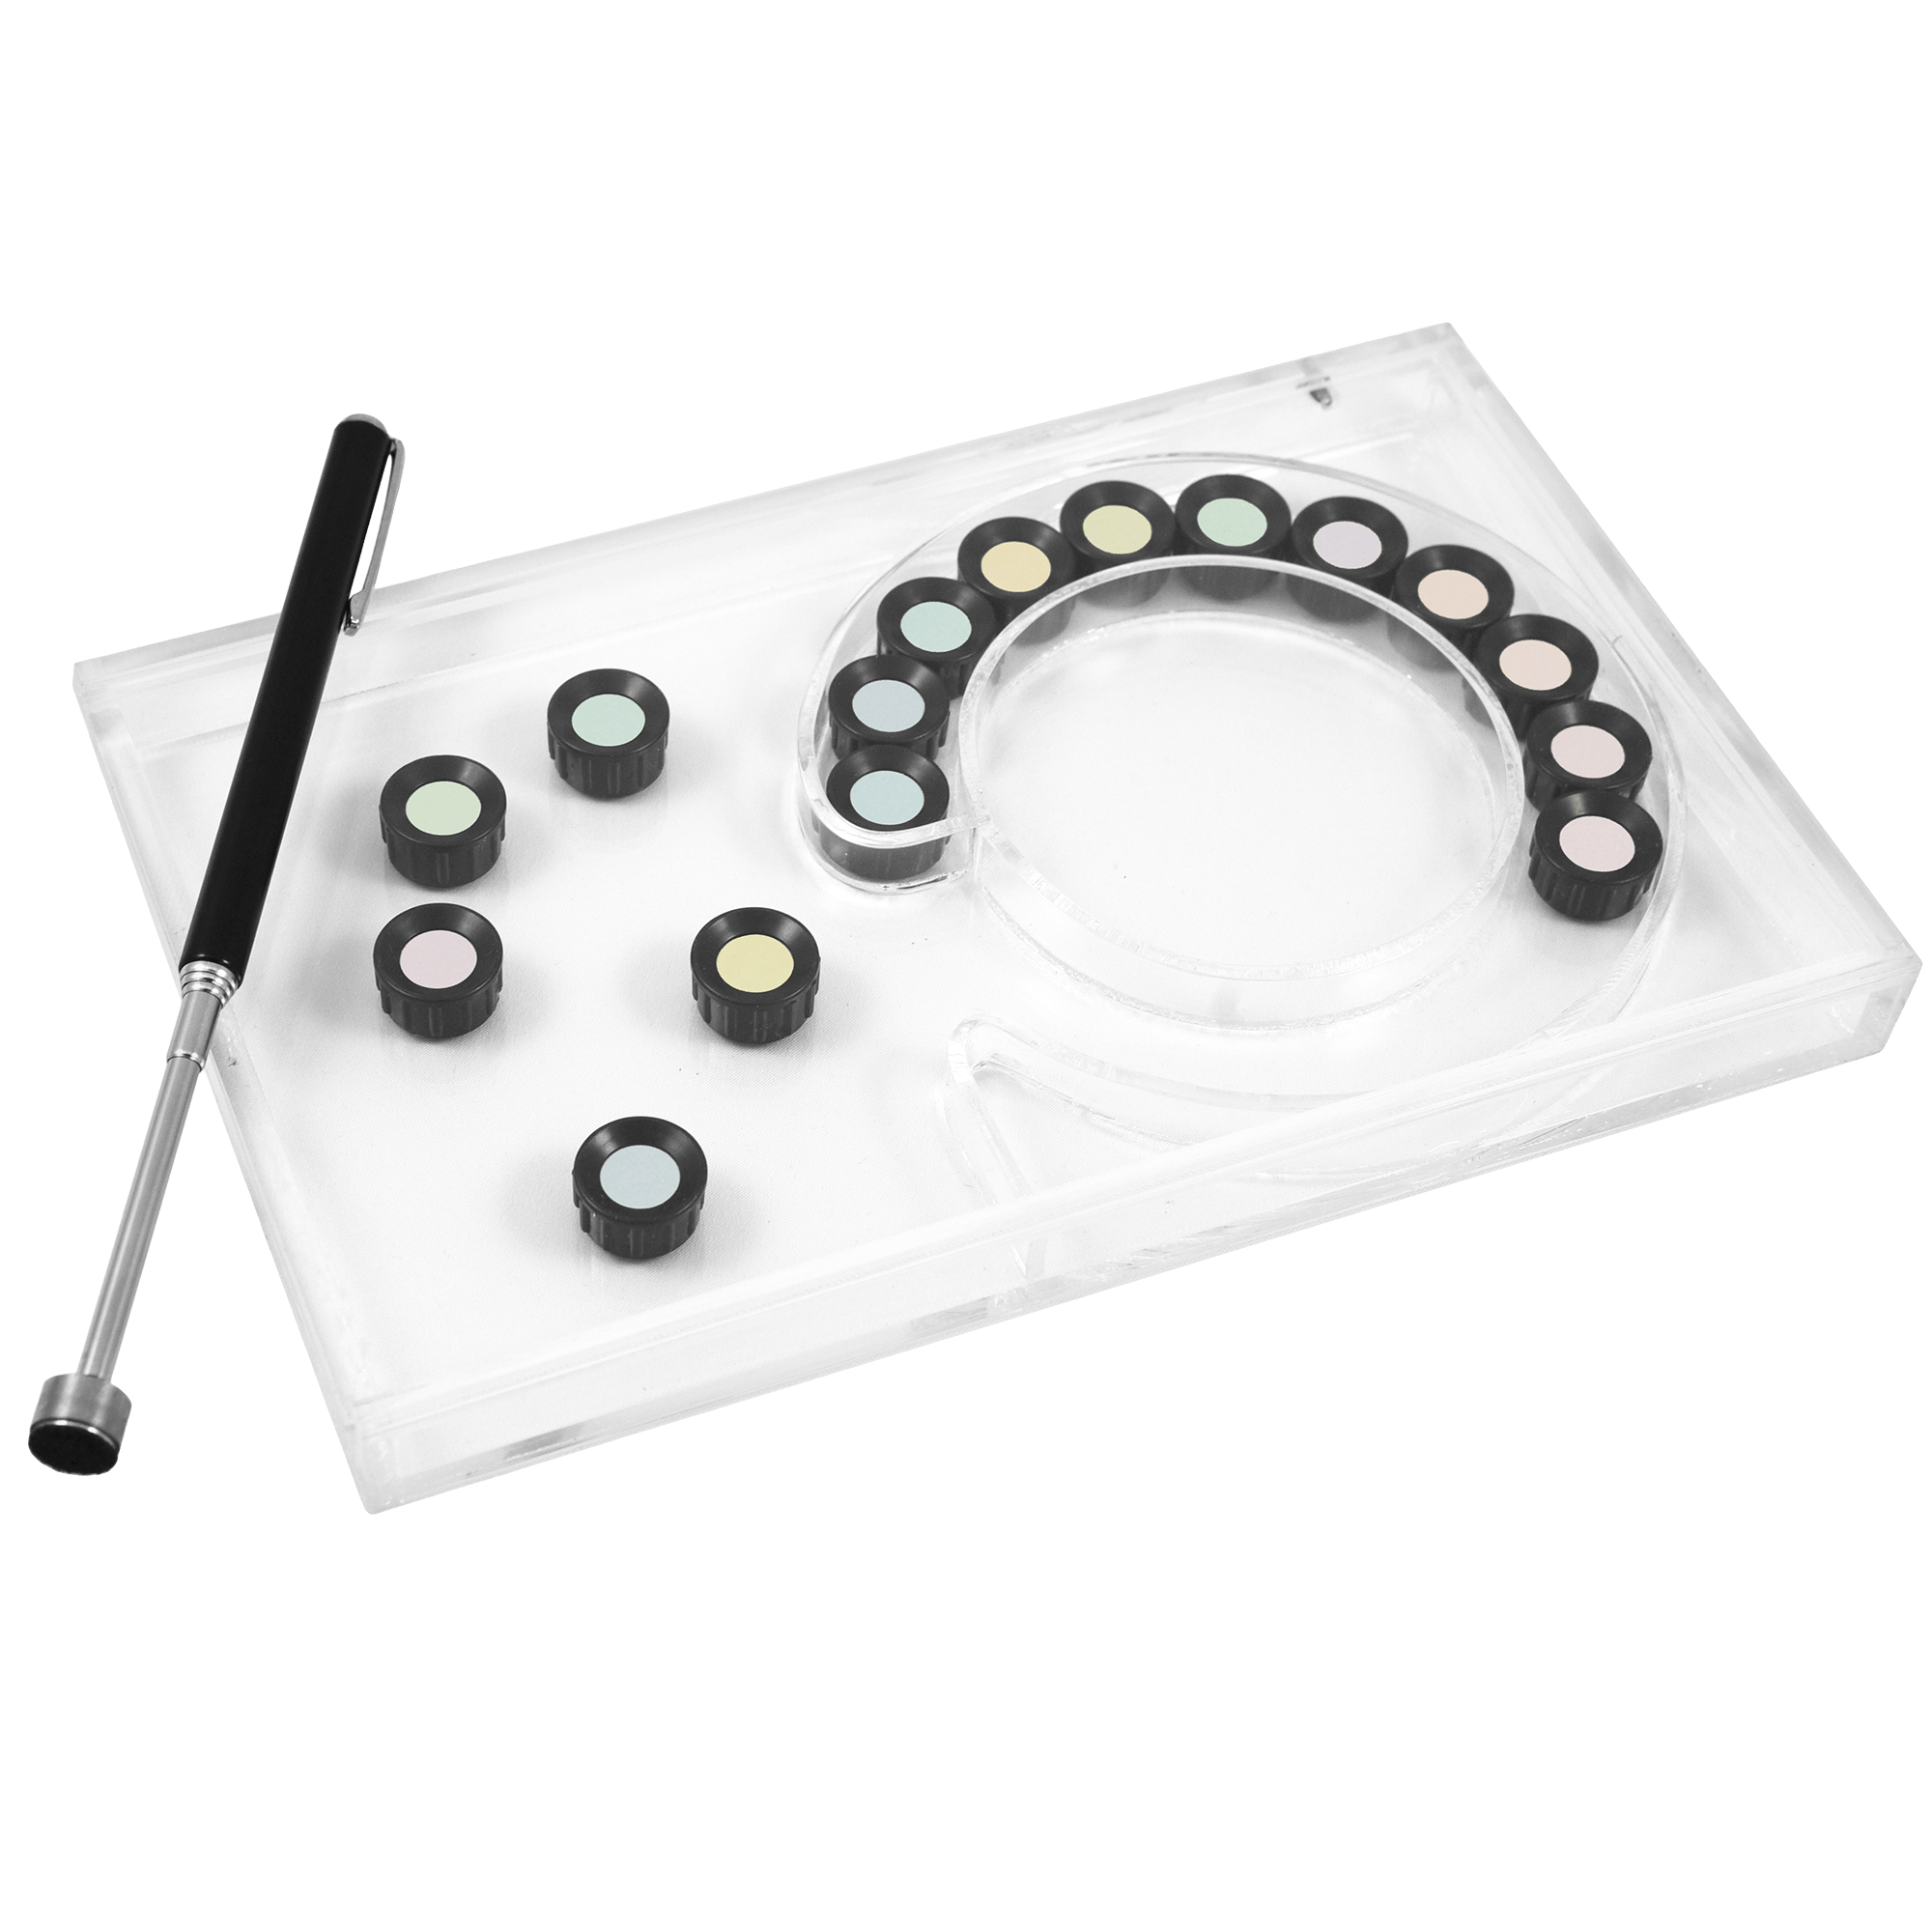 Good-Lite 730025-Kit Magnetic Lanthony D-15 Color Test